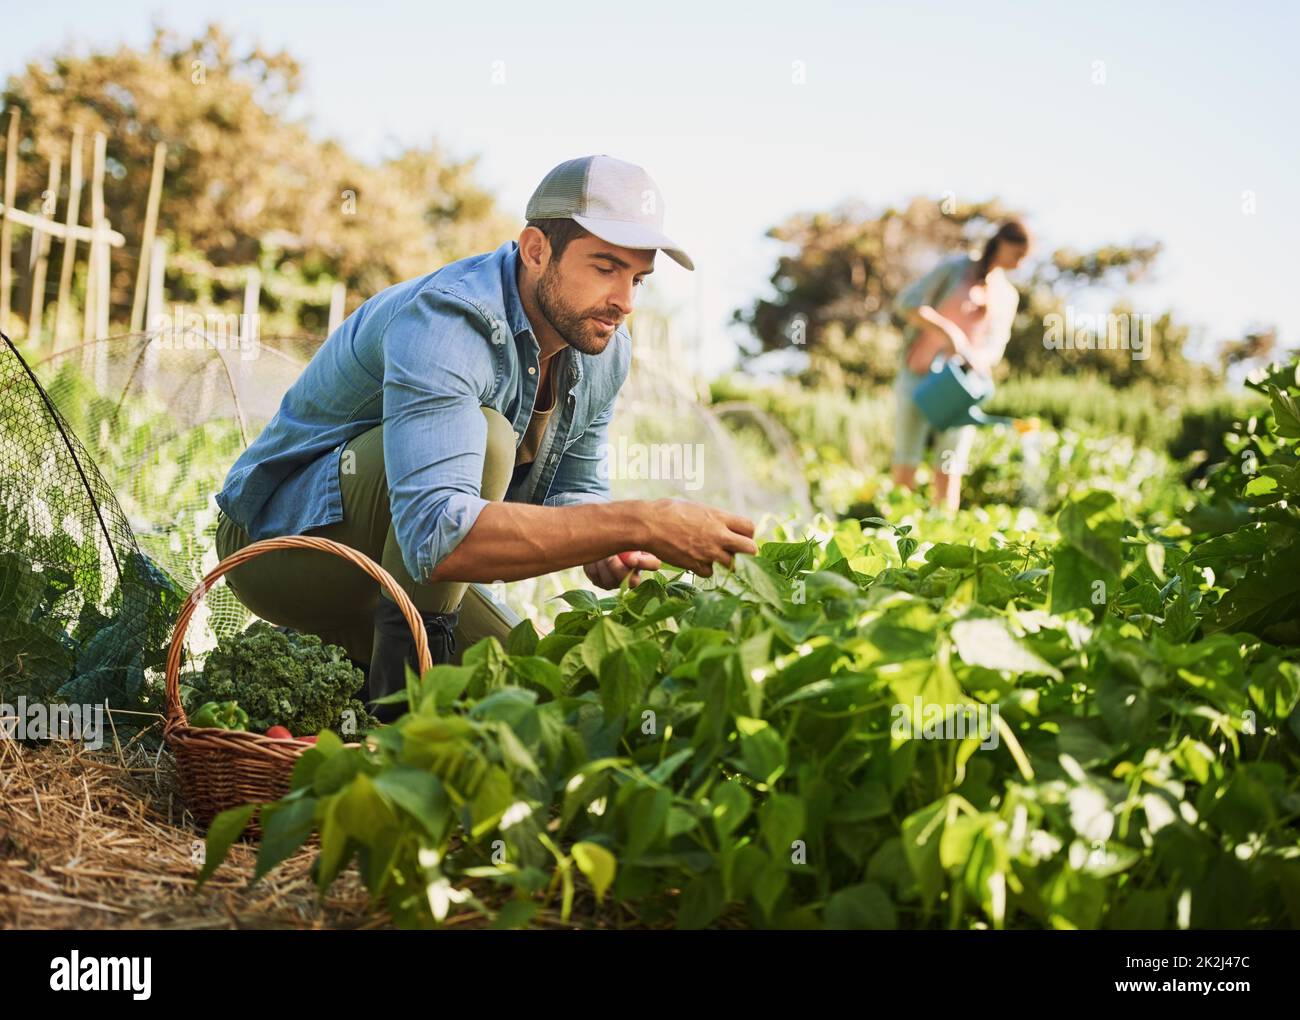 Die Früchte seiner harten Arbeit ernten. Aufnahme von zwei glücklichen jungen Bauern, die auf ihrem Bauernhof gemeinsam Kräuter und Gemüse ernten. Stockfoto